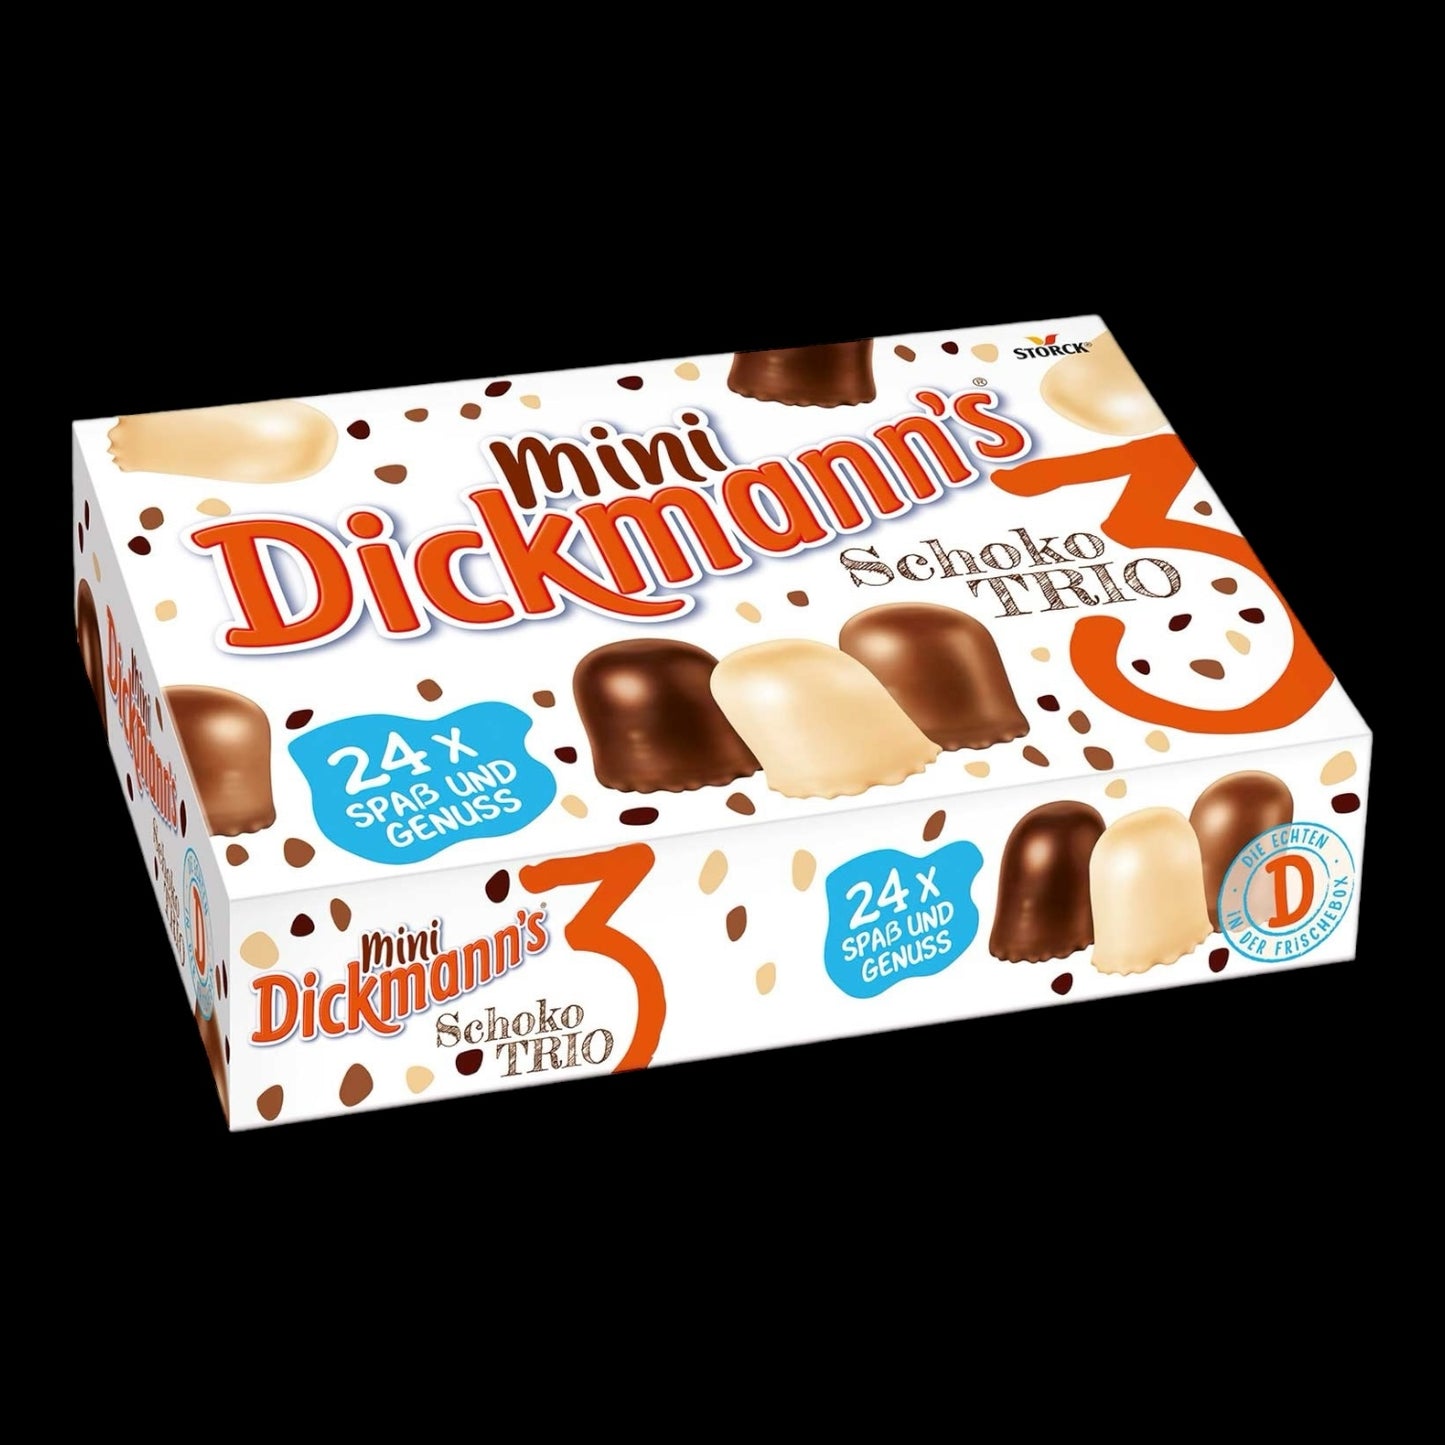 Super Dickmann's Schoko Strolche 24er